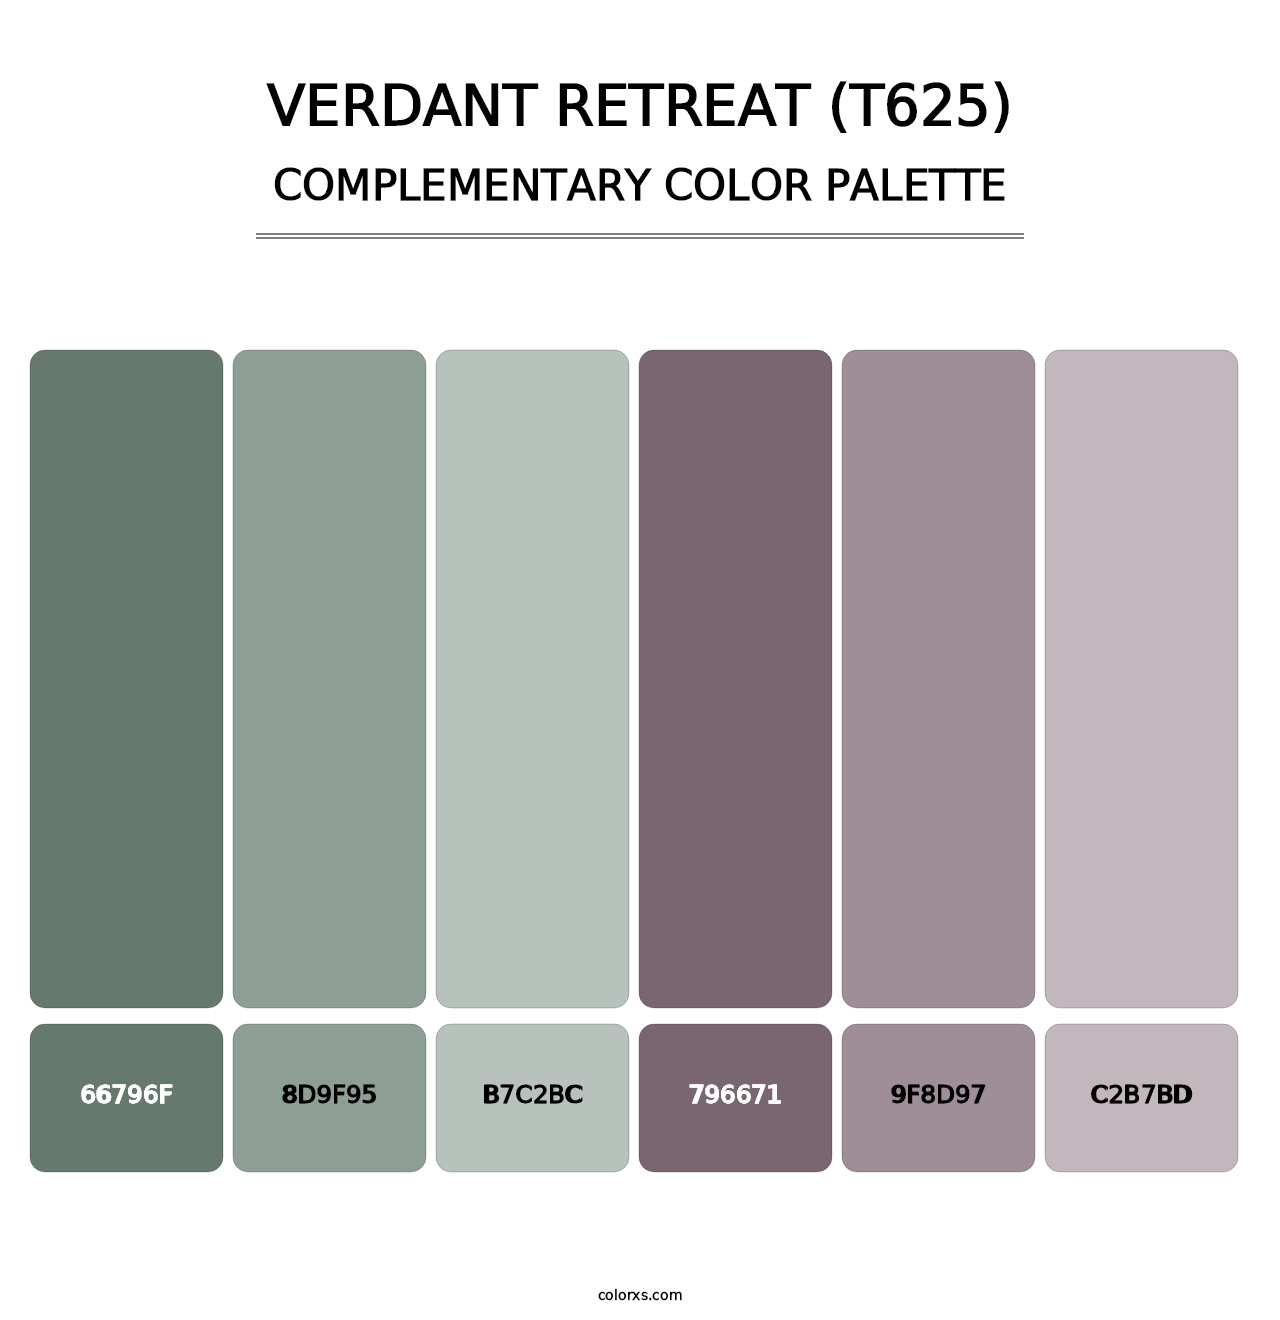 Verdant Retreat (T625) - Complementary Color Palette